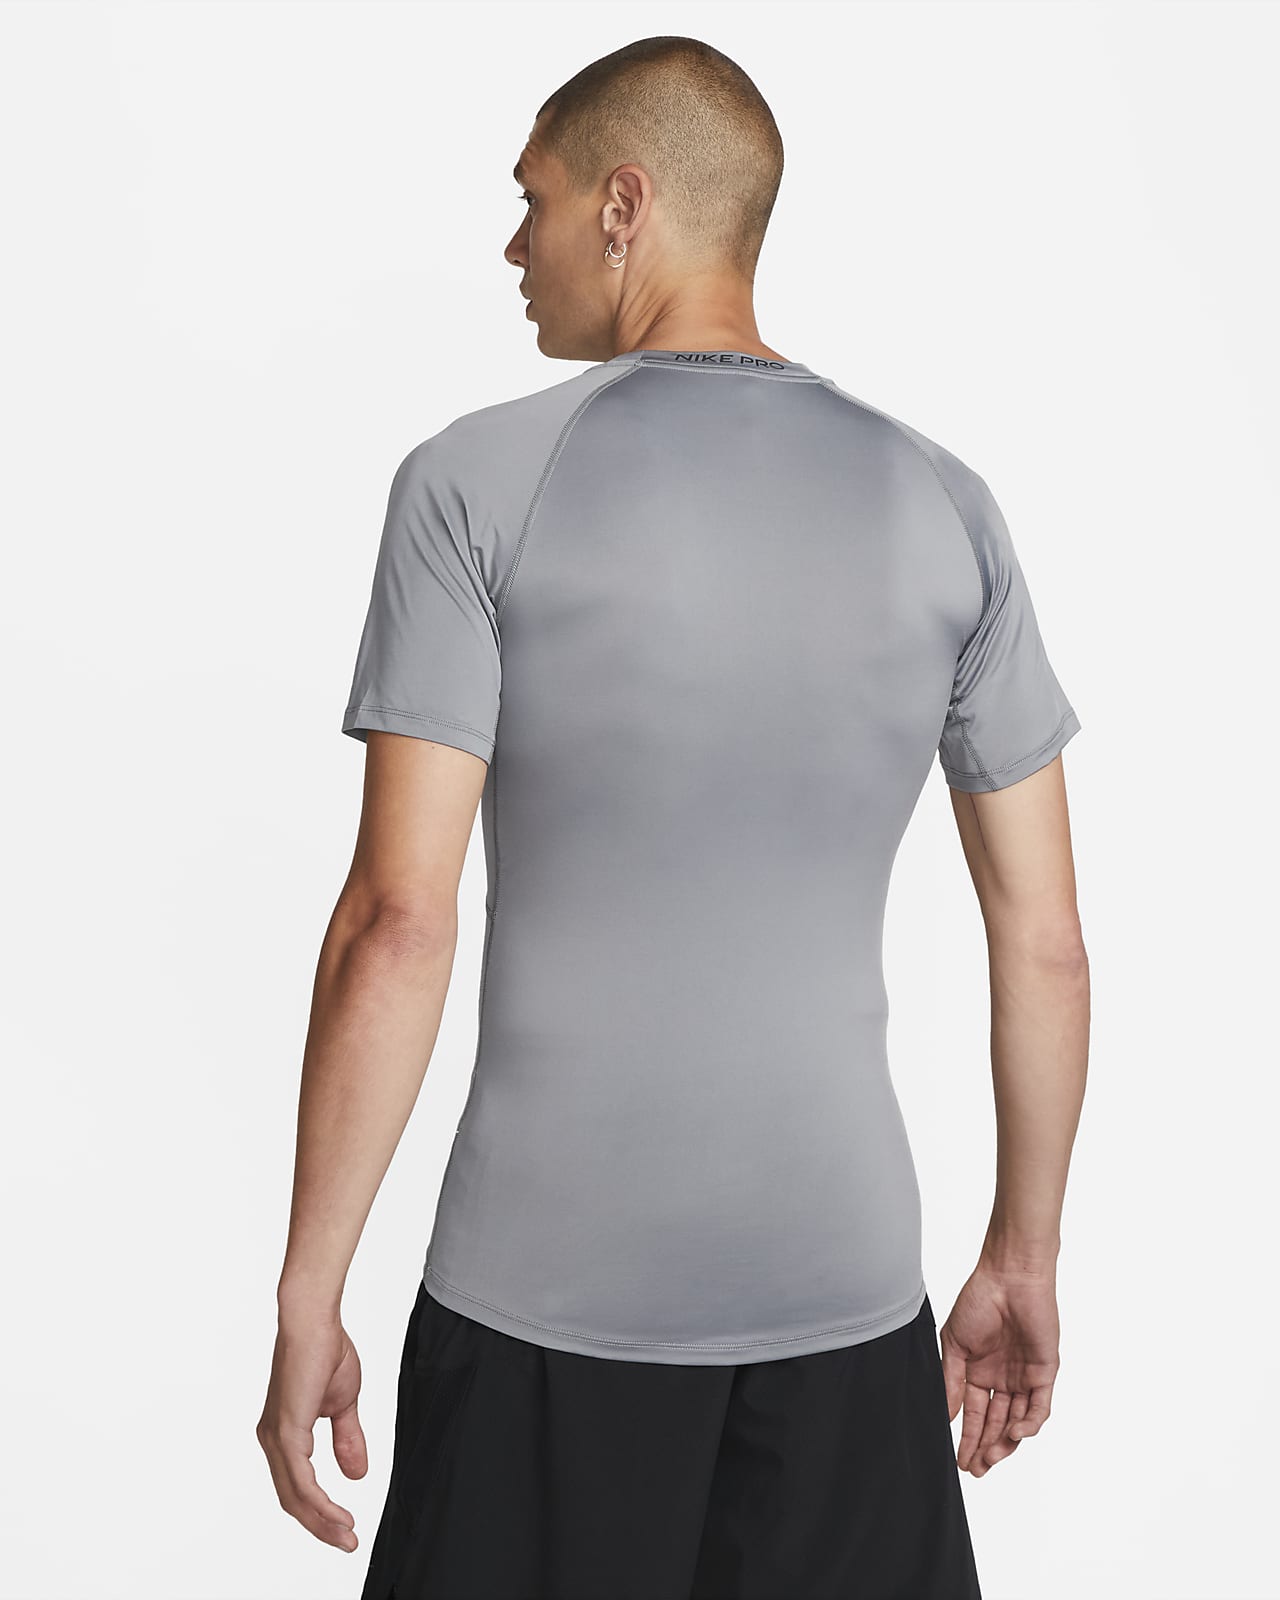 Hauts et T-shirts pour Homme. Nike CH